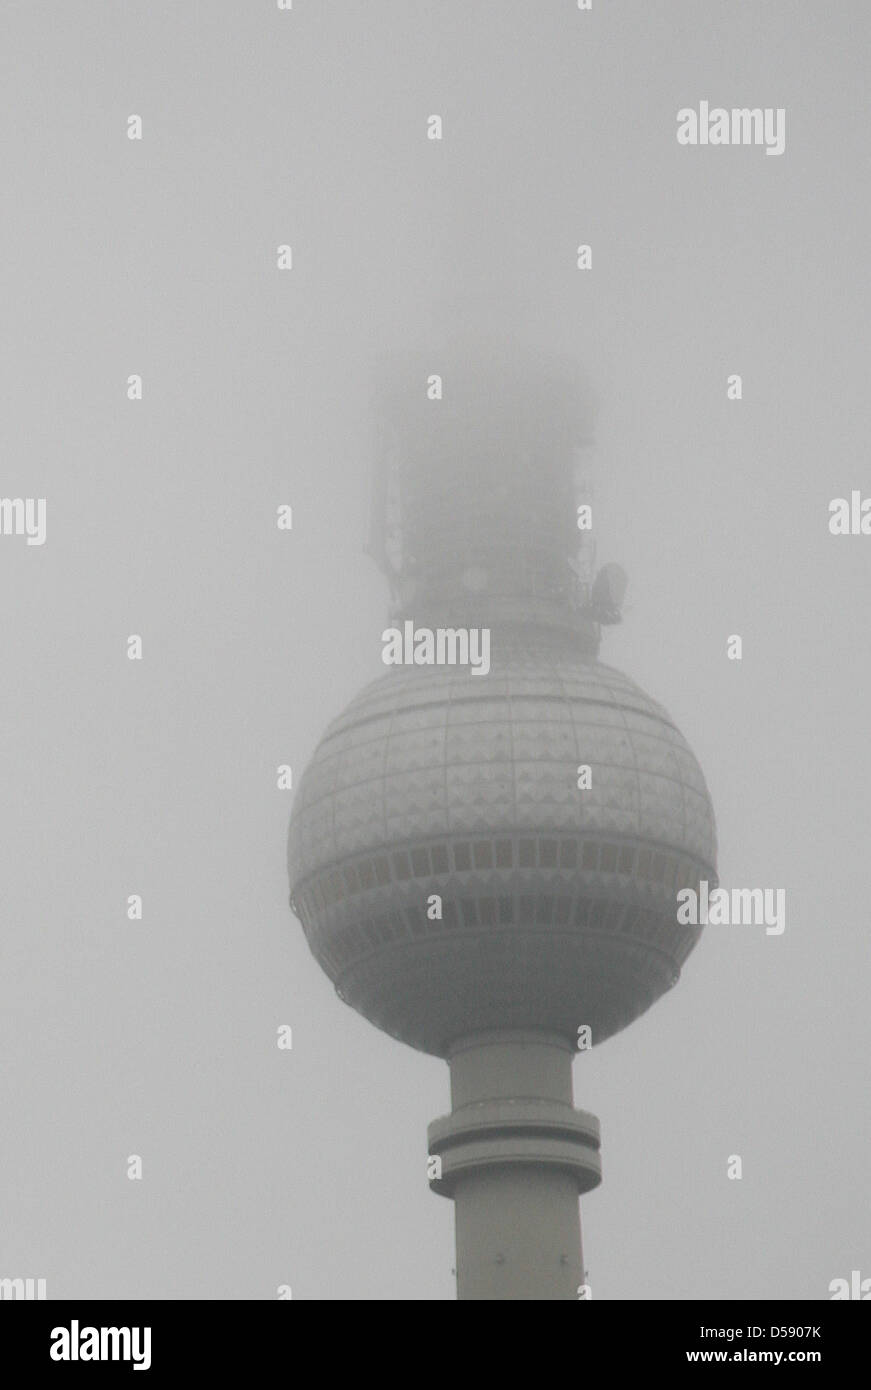 Der Fernsehturm auf dem Berliner Alexanderplatz ist am Montag (31.05.2010) im Nebel kaum zu erkennen. Das Wetter in der Hauptstadt soll erst in der zweiten Wochenhälfte besser werden. Foto: Christine Cornelius dpa Stock Photo